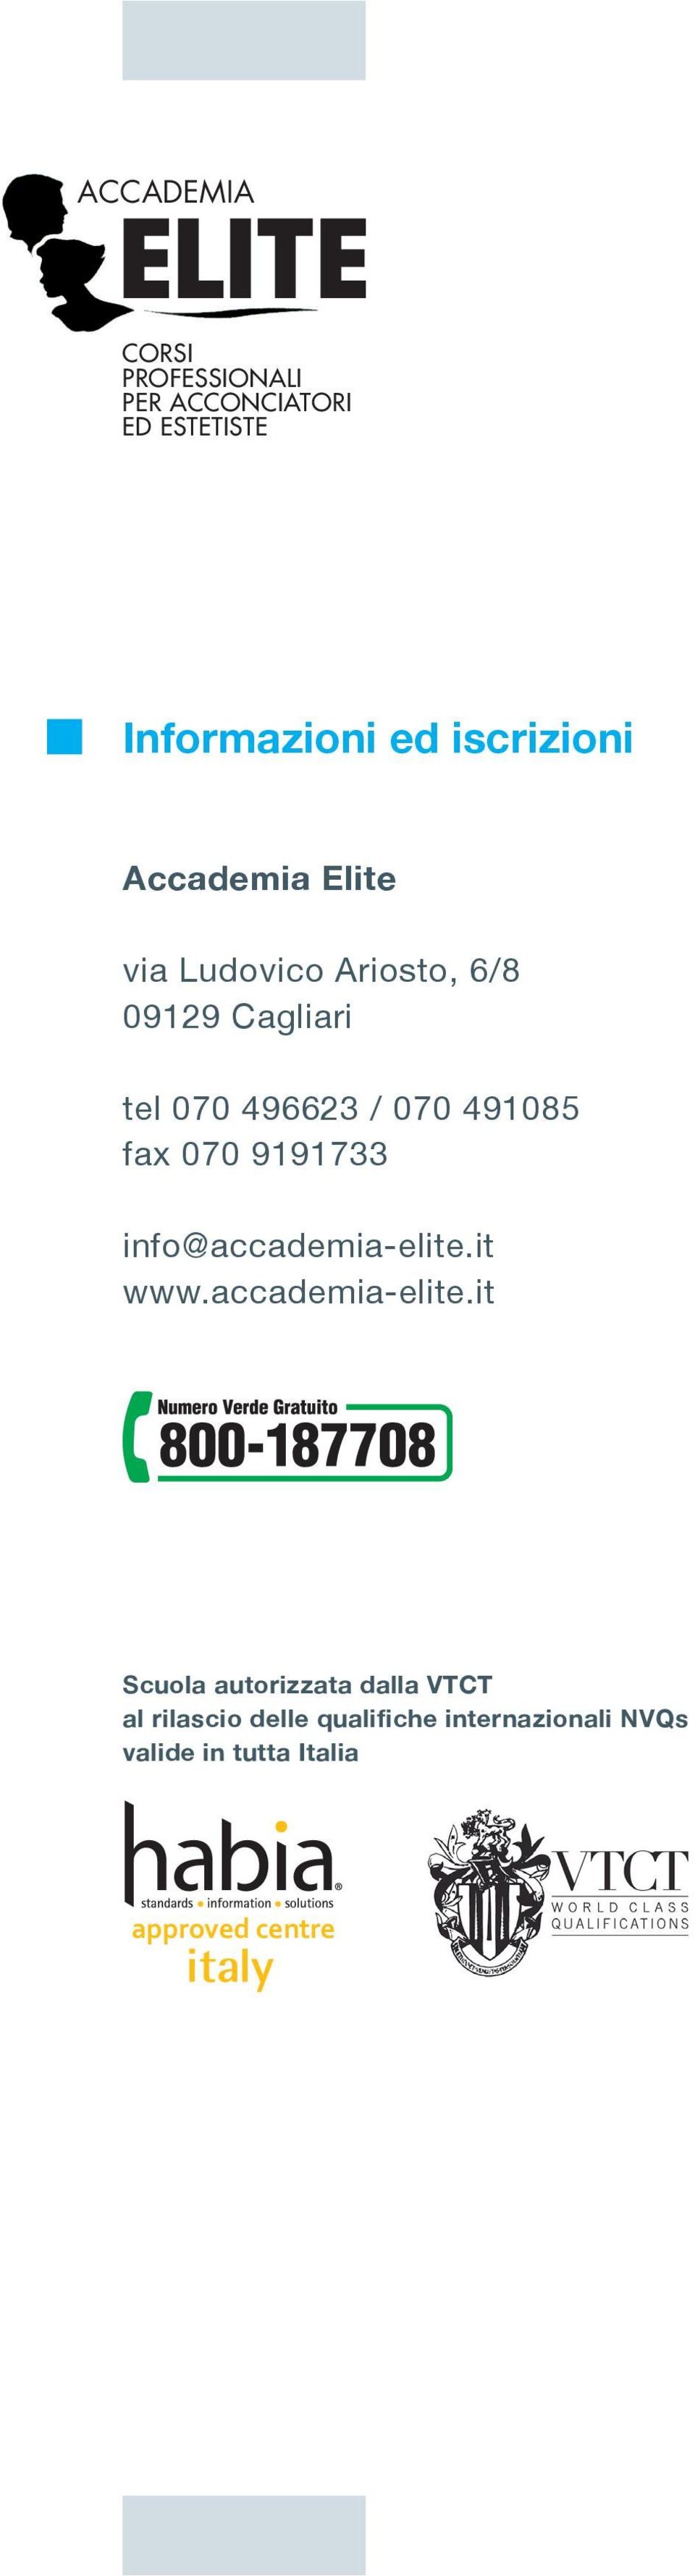 fax 070 9191733 info@accademia-elite.